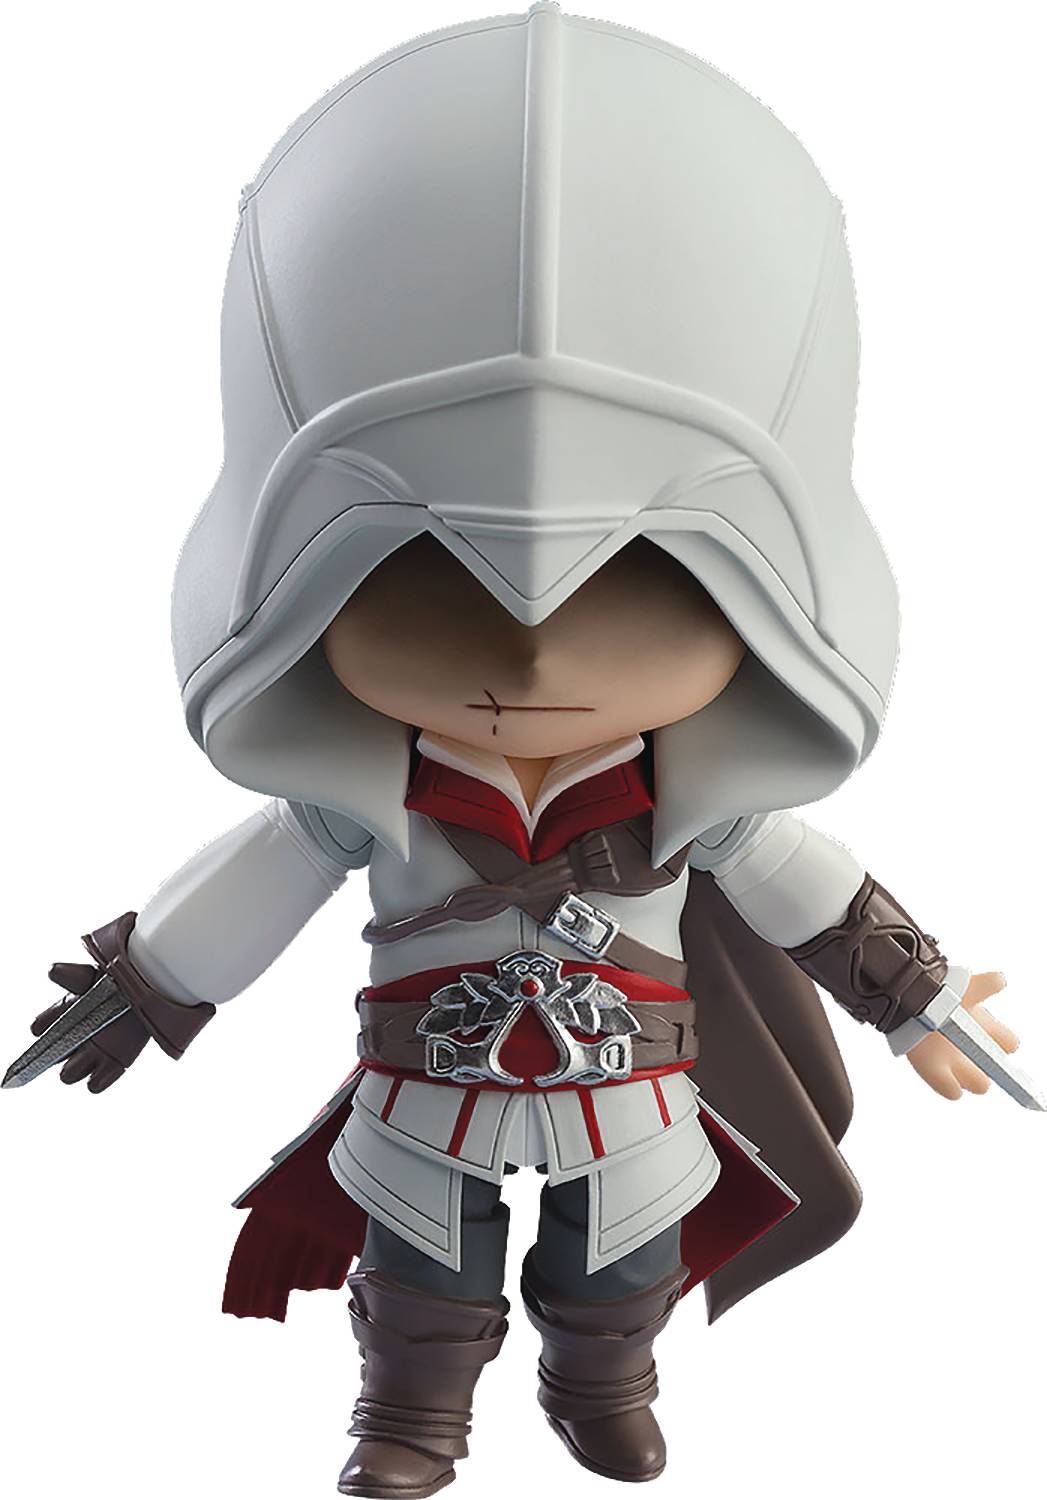 Nendoroid: Assassin's Creed II - Ezio Auditore